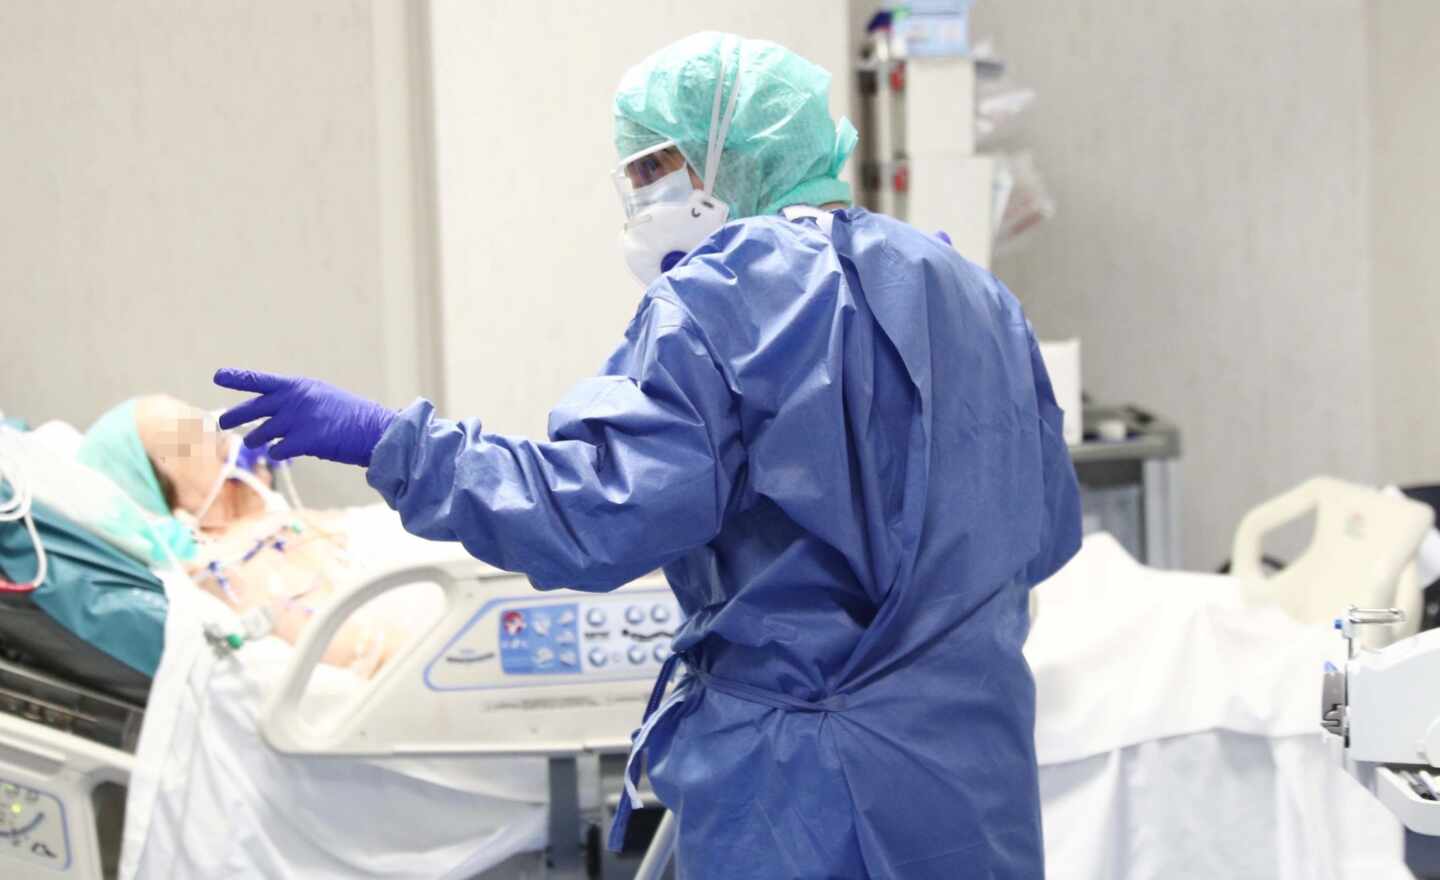 Italia ya supera a China como el país con más muertos por coronavirus en todo el mundo